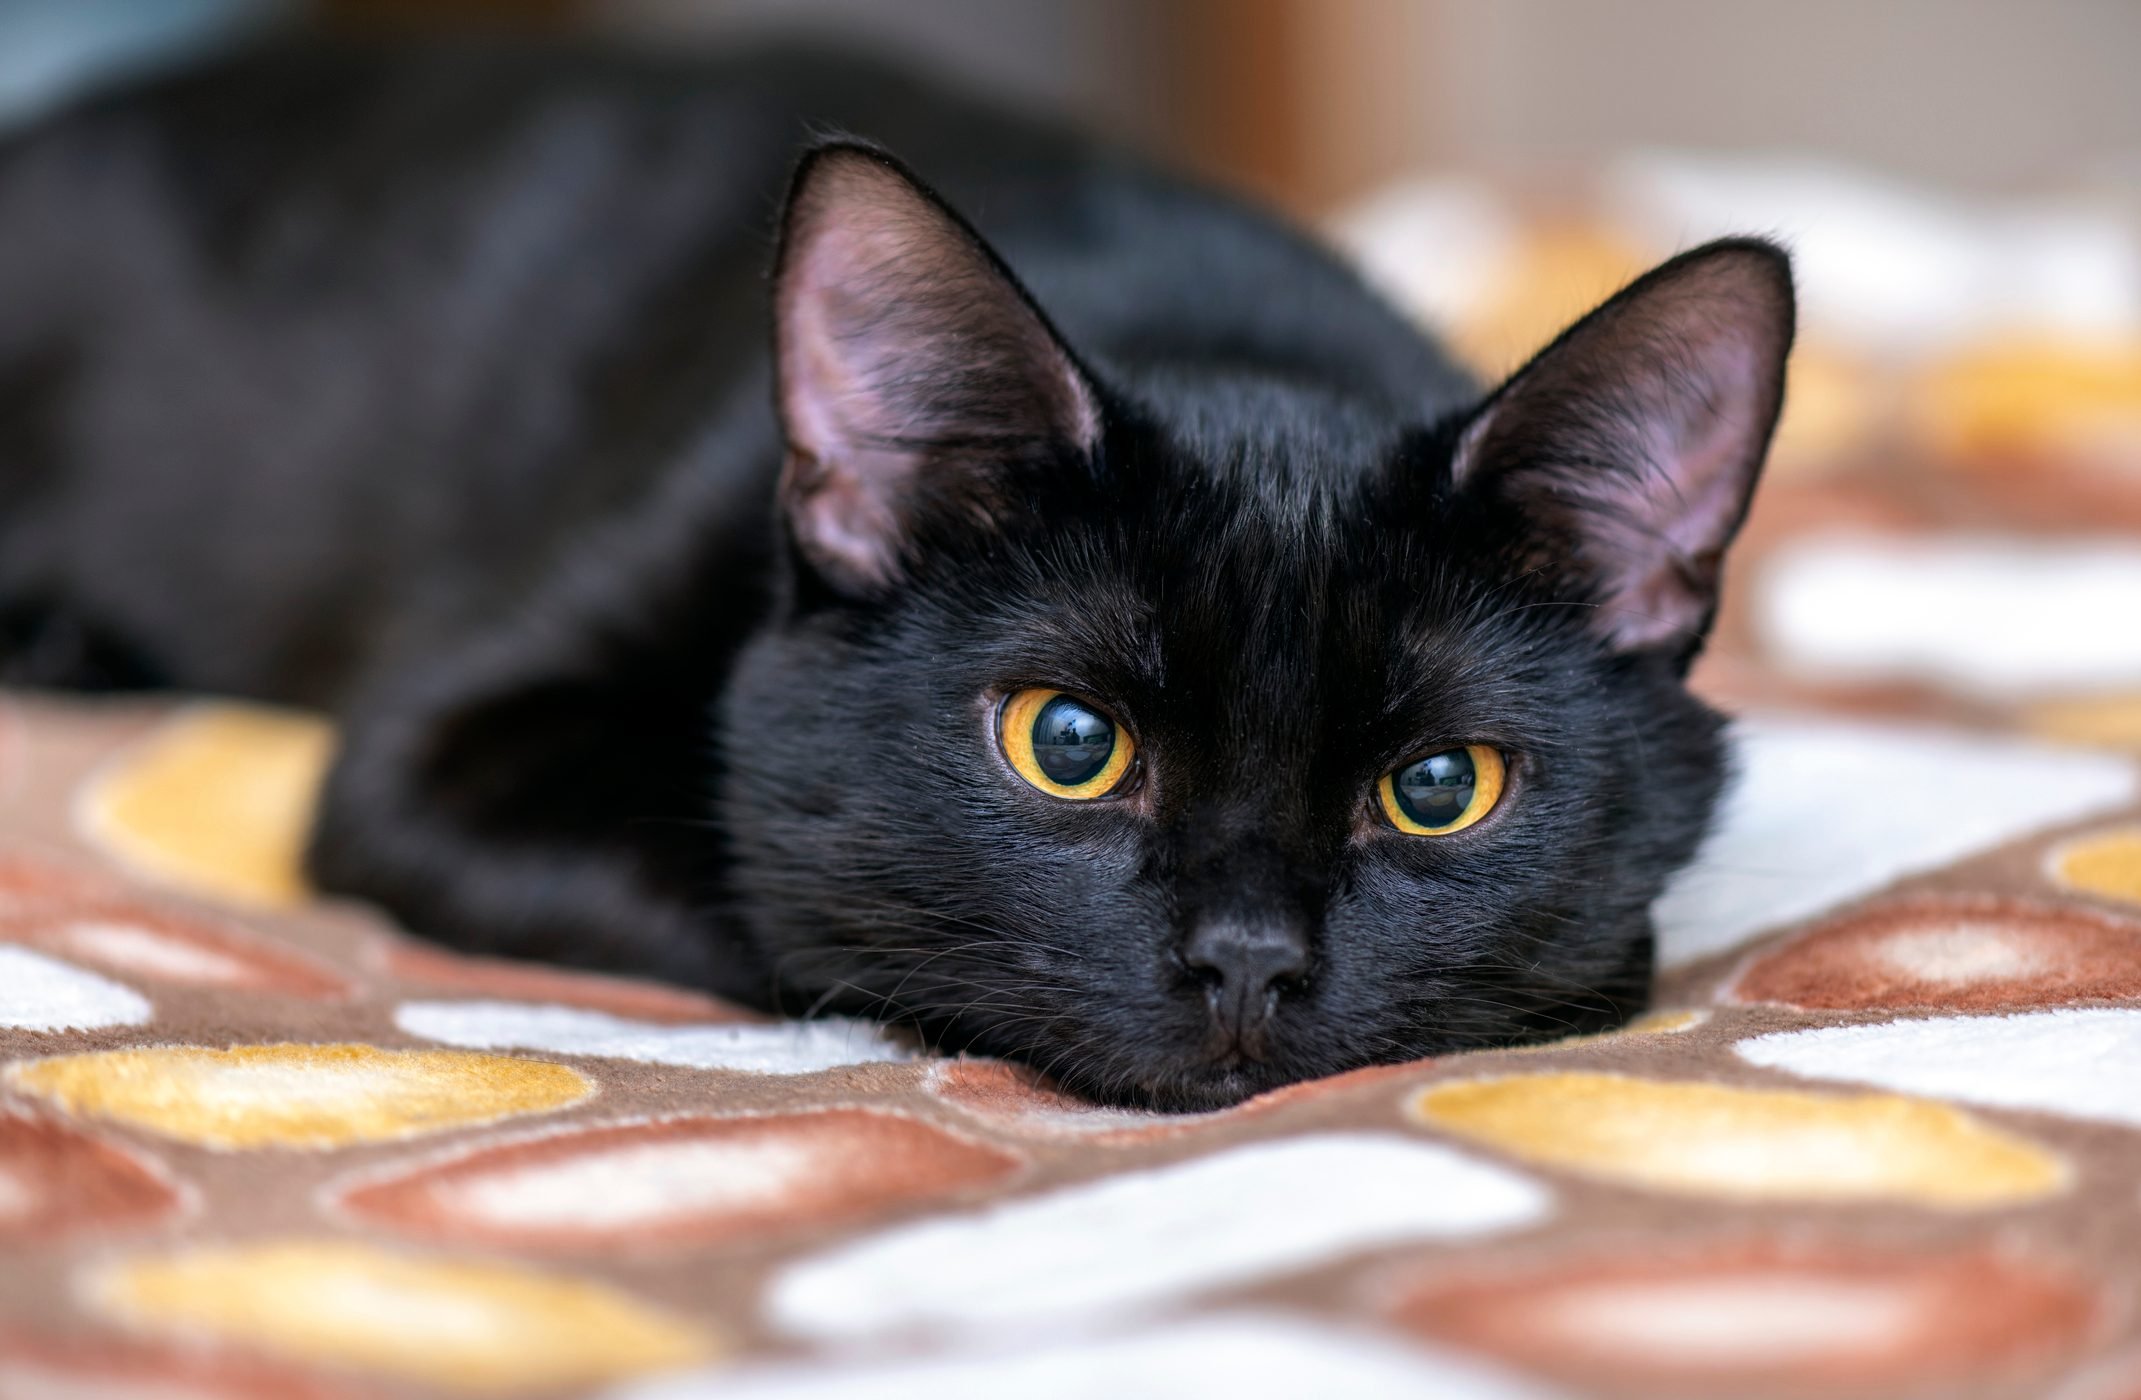 जानिए काली बिल्ली का दिखना शुभ है या अशुभ